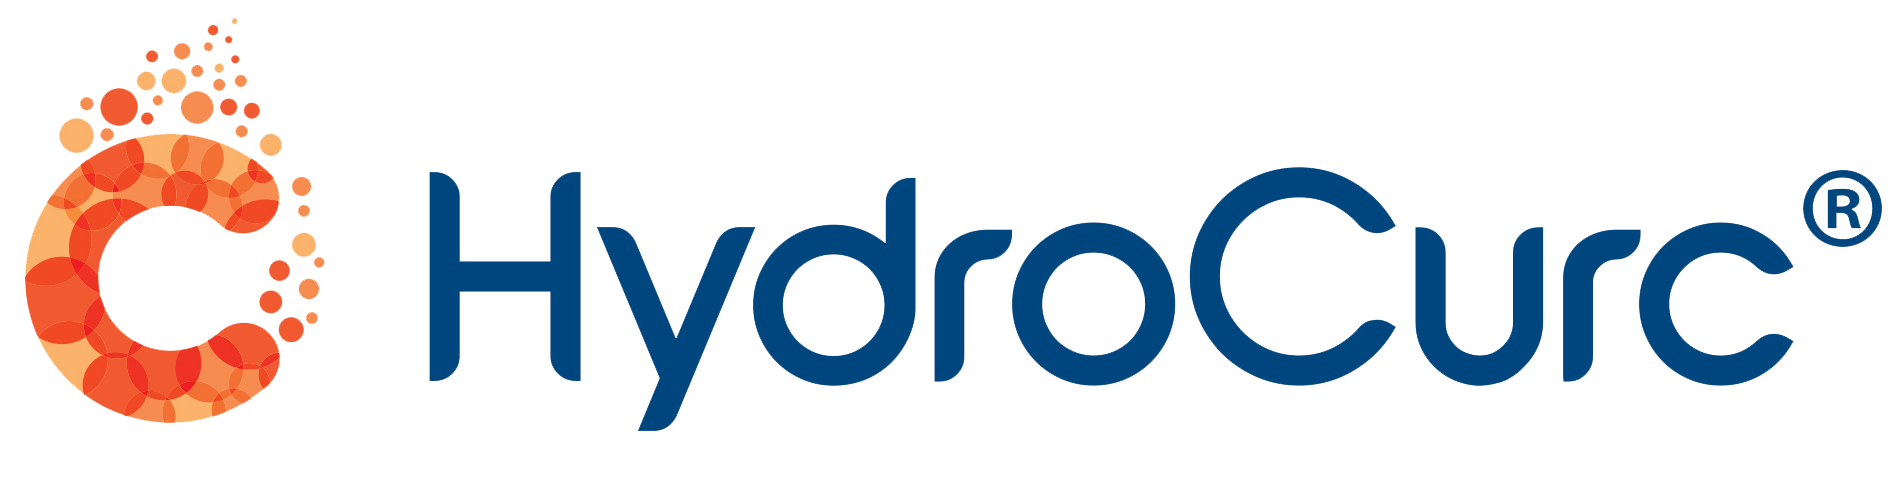 Hydrocurc Logo